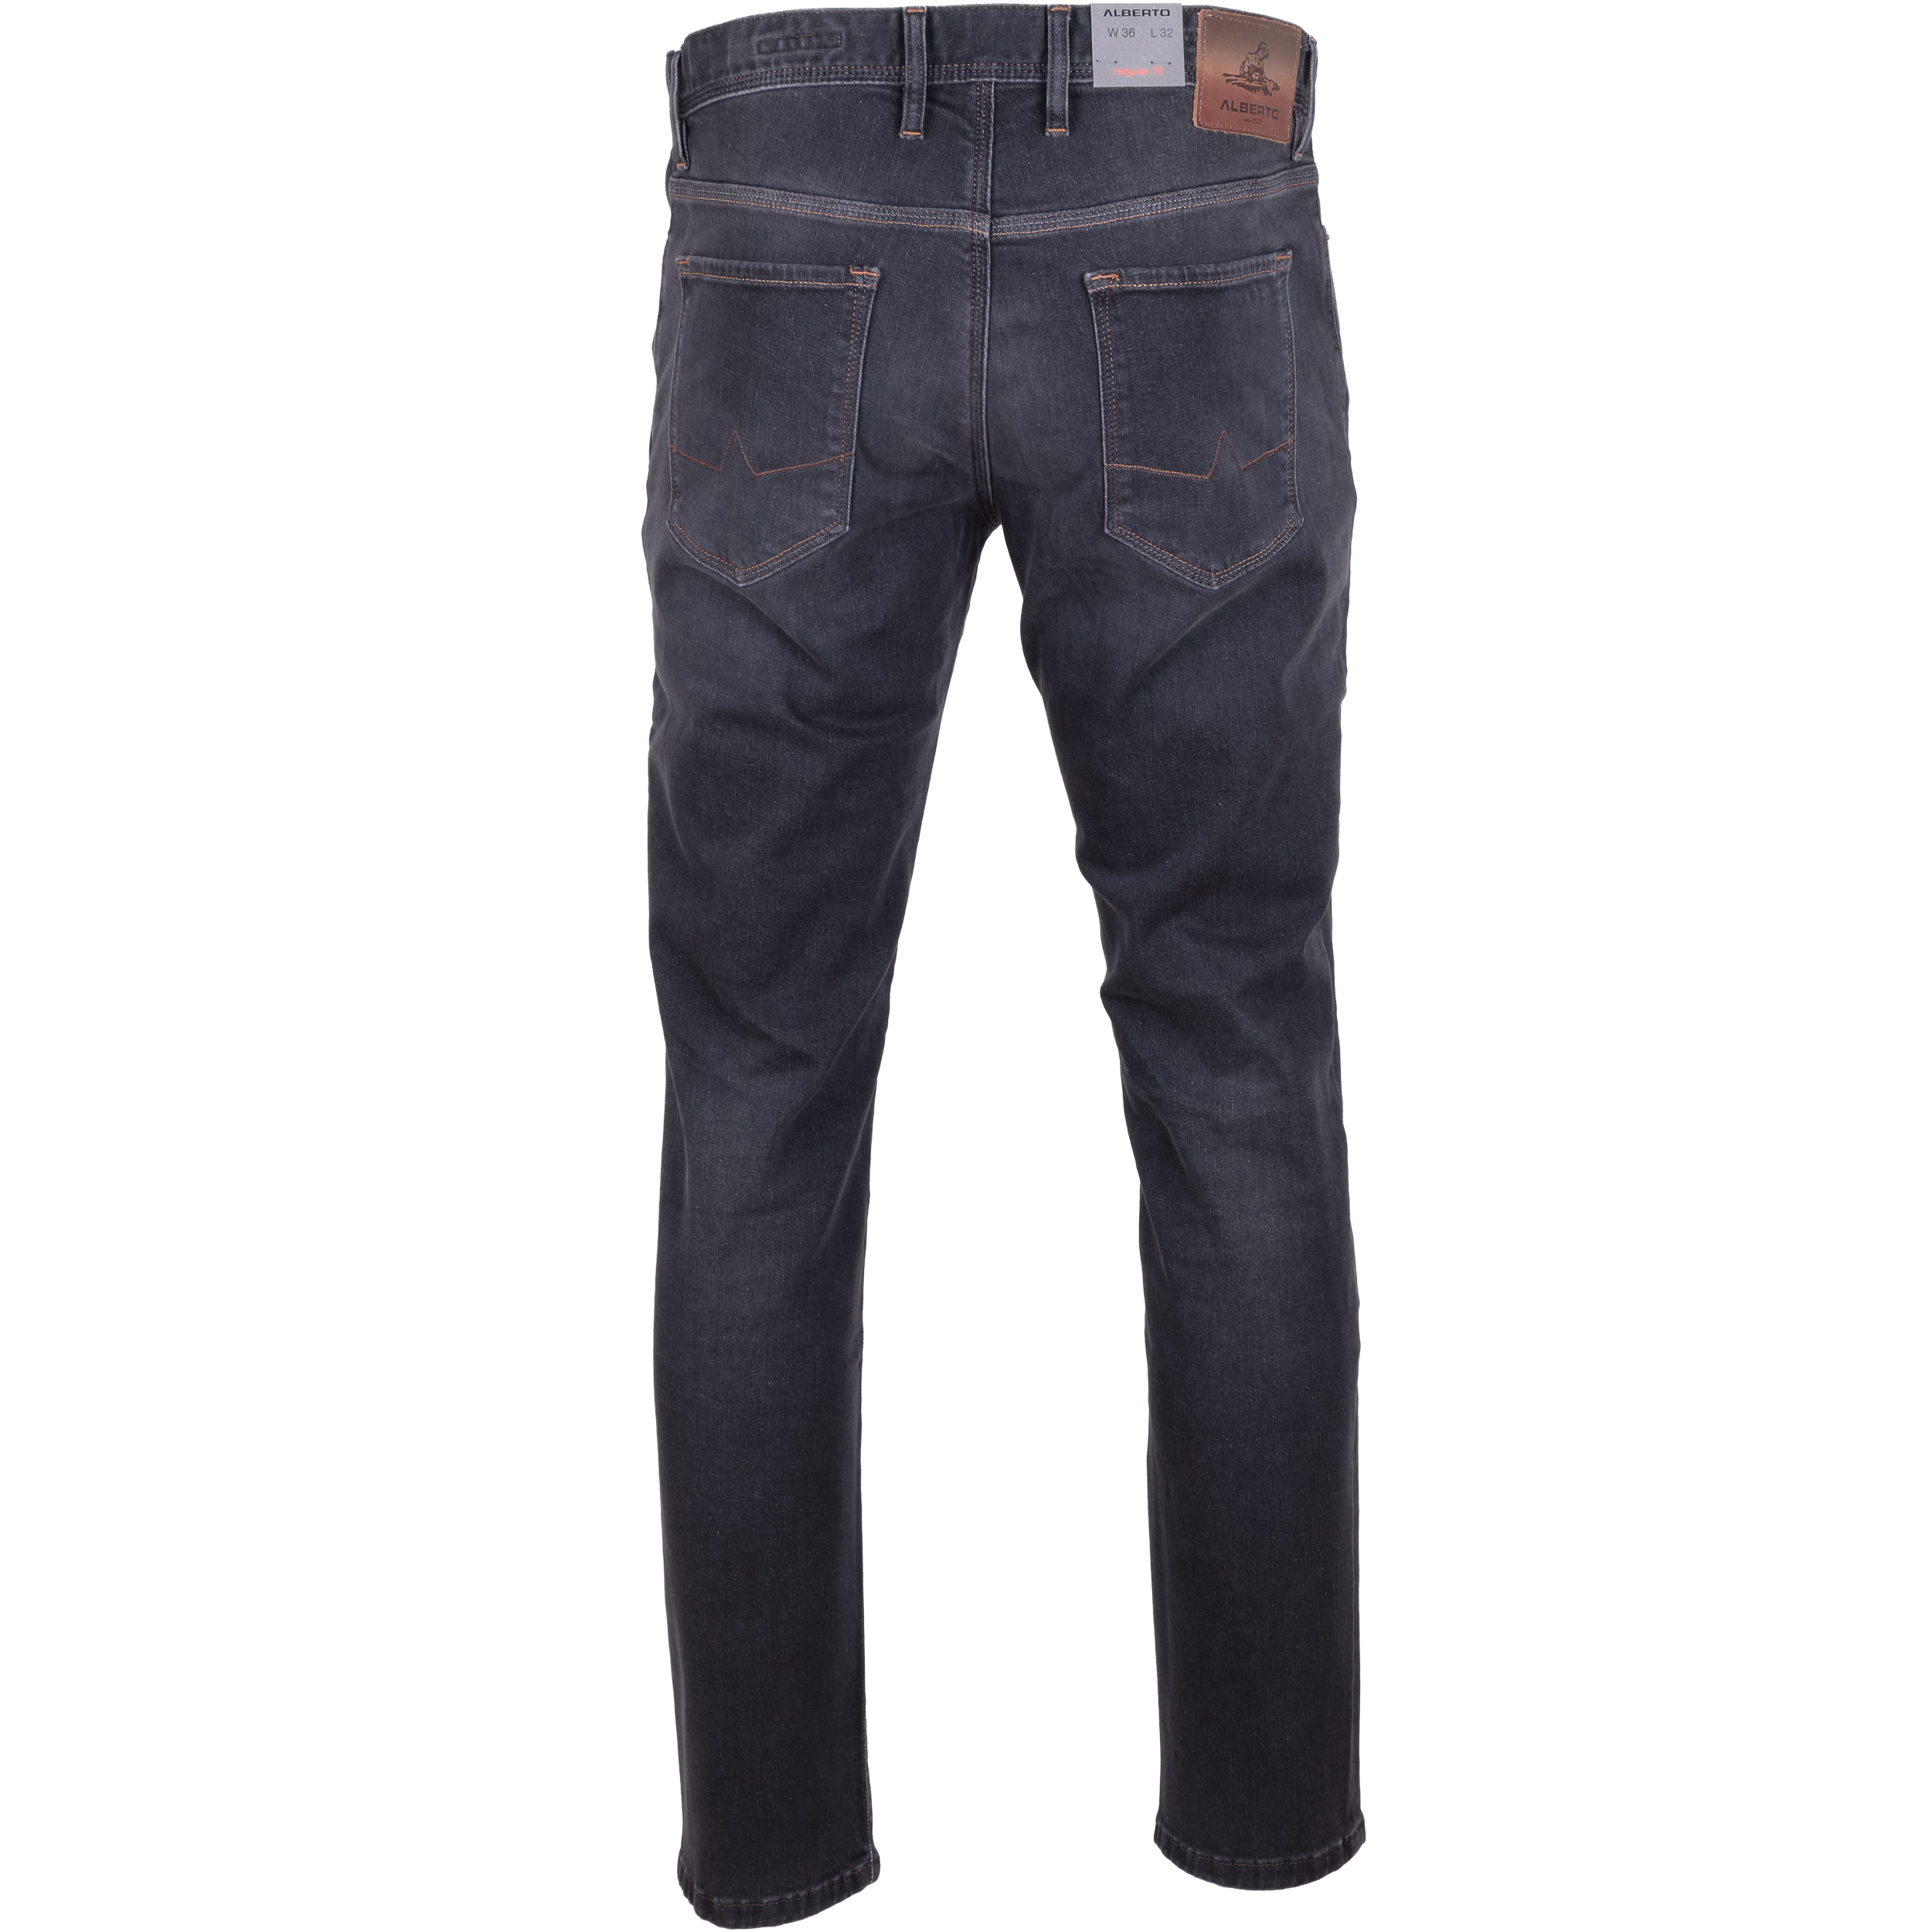 Alberto Herren Jeans Pipe regular fit - grey 36/32